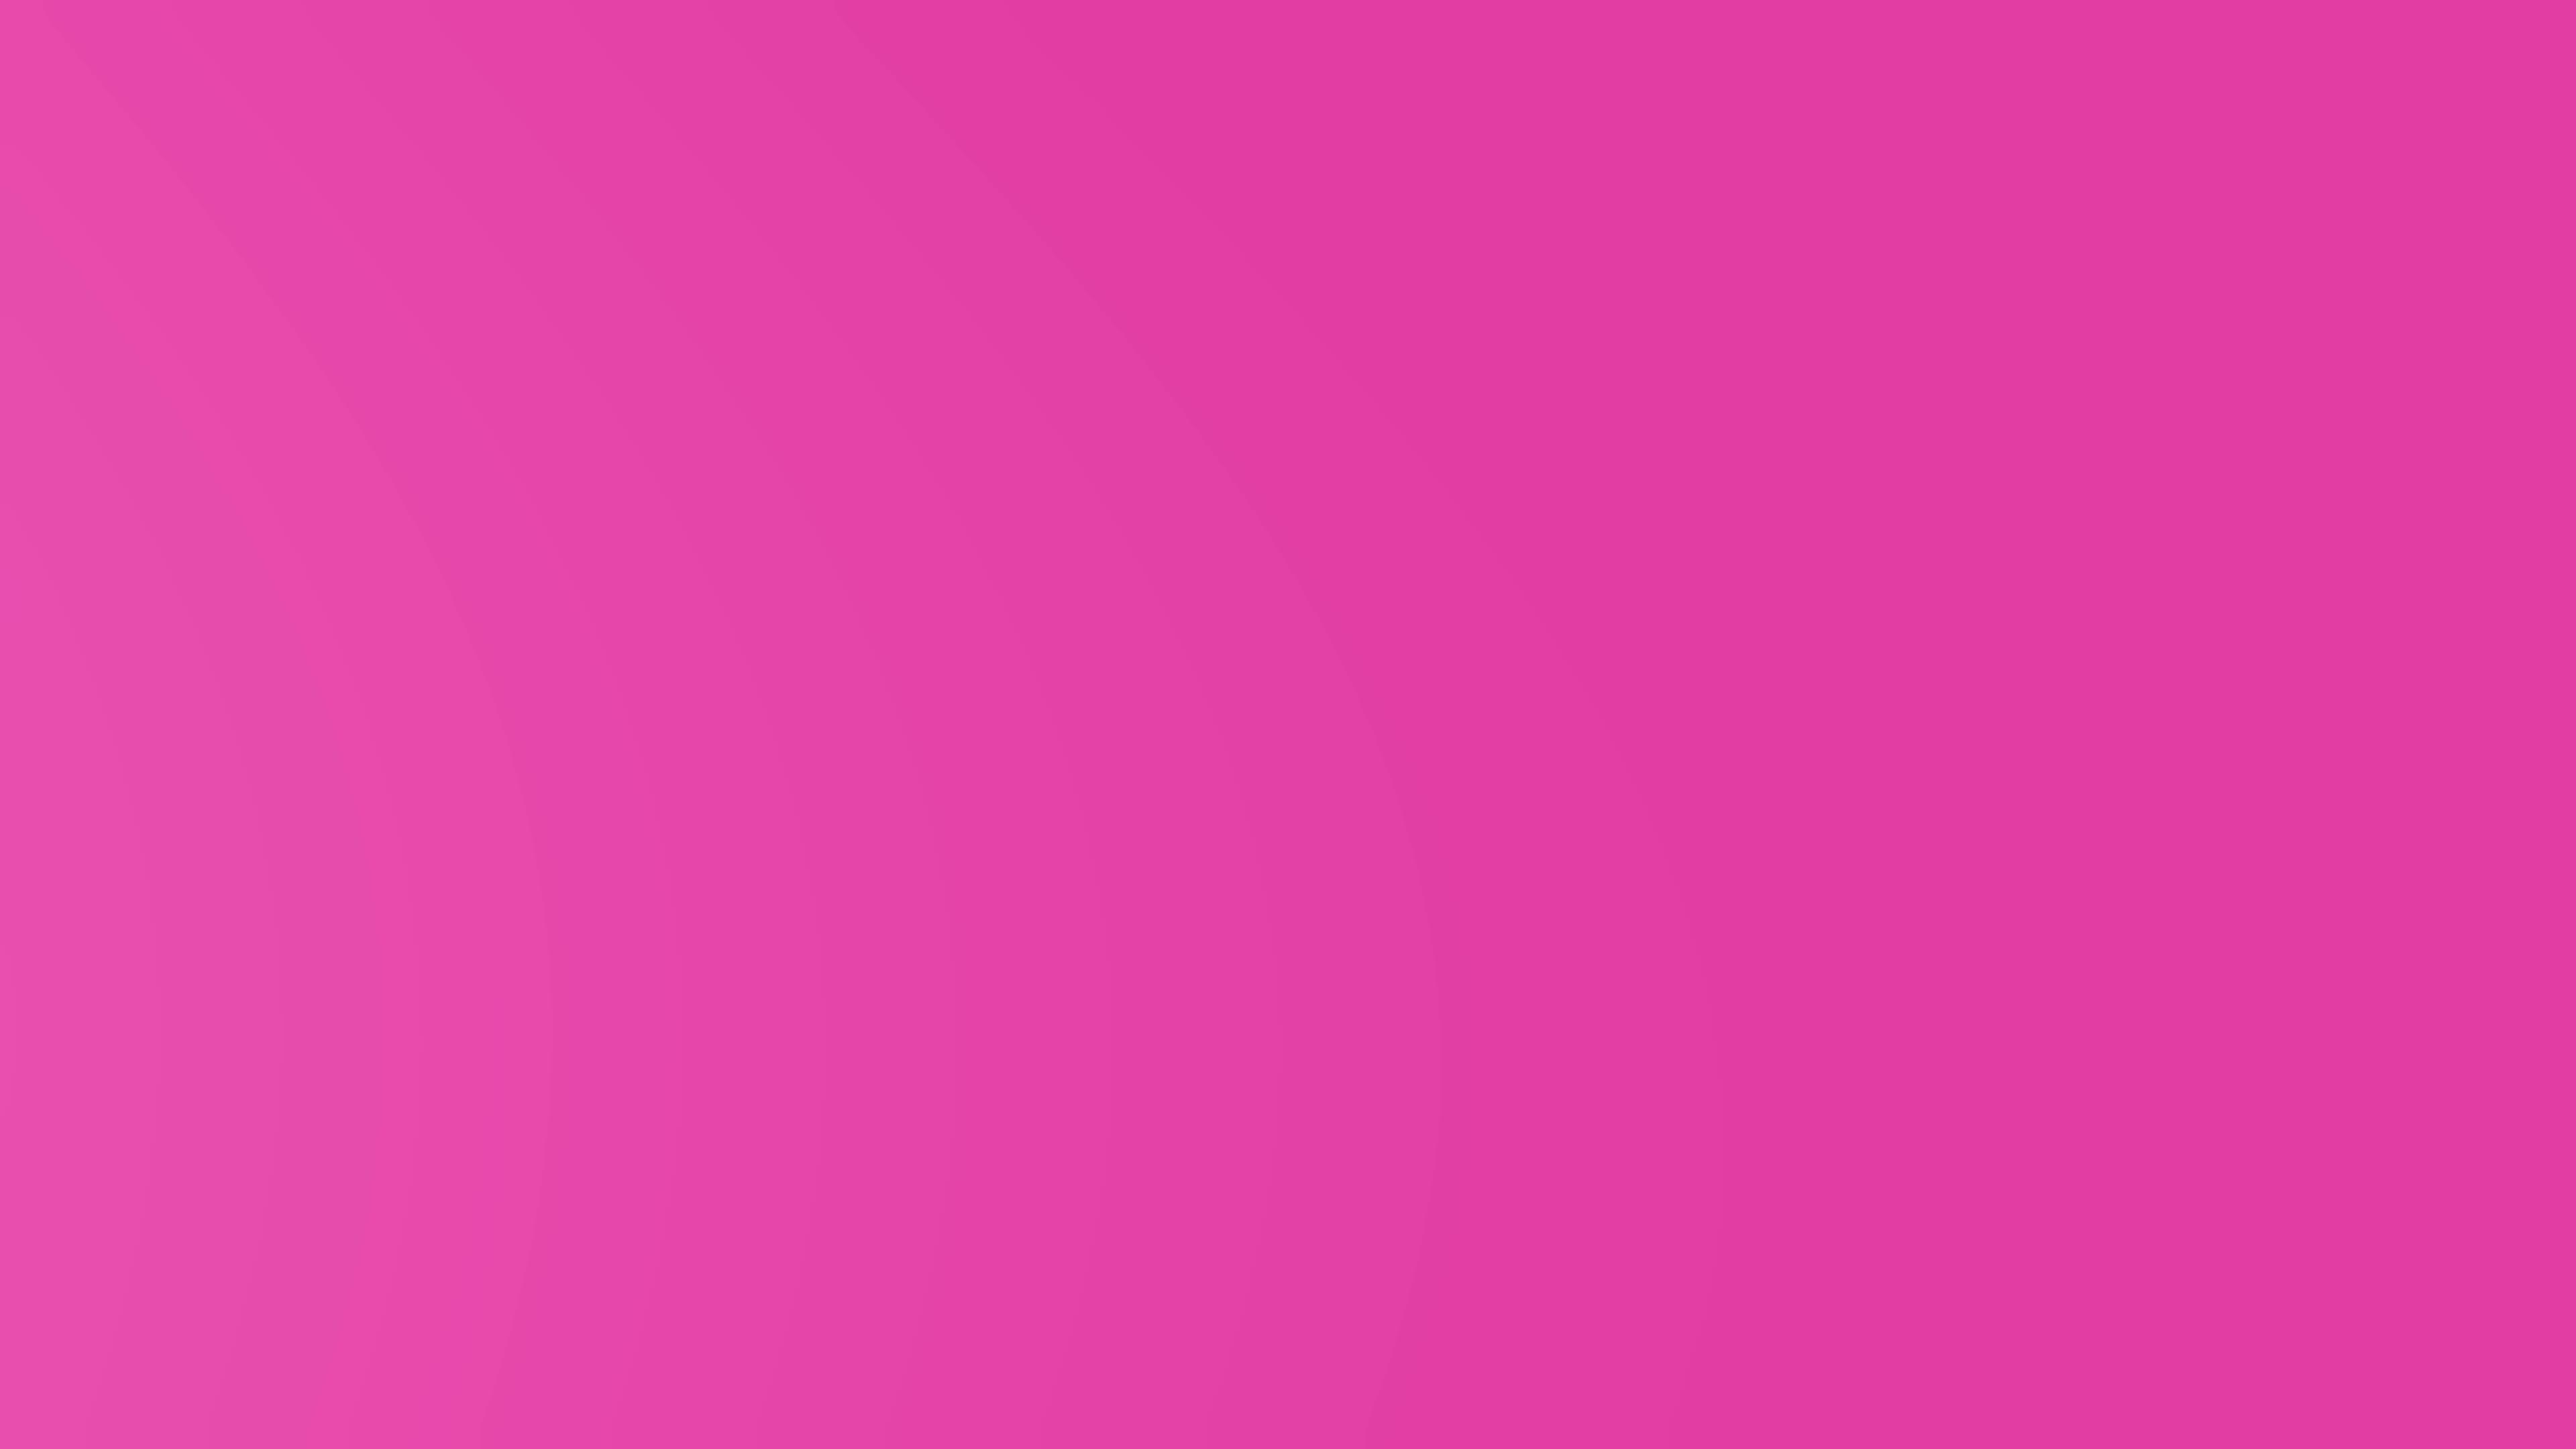 Video chìm màu hồng: Hình ảnh như thể bạn đang được đắm mình trong một dòng nước hồng tươi mới, video chìm màu hồng sẽ đưa bạn đến một thế giới tuyệt vời của sự nữ tính và sự lãng mạn. Điều đó đủ để khiến bạn nhấp chuột ngay bây giờ và thưởng thức hình ảnh đầy mê hoặc này.